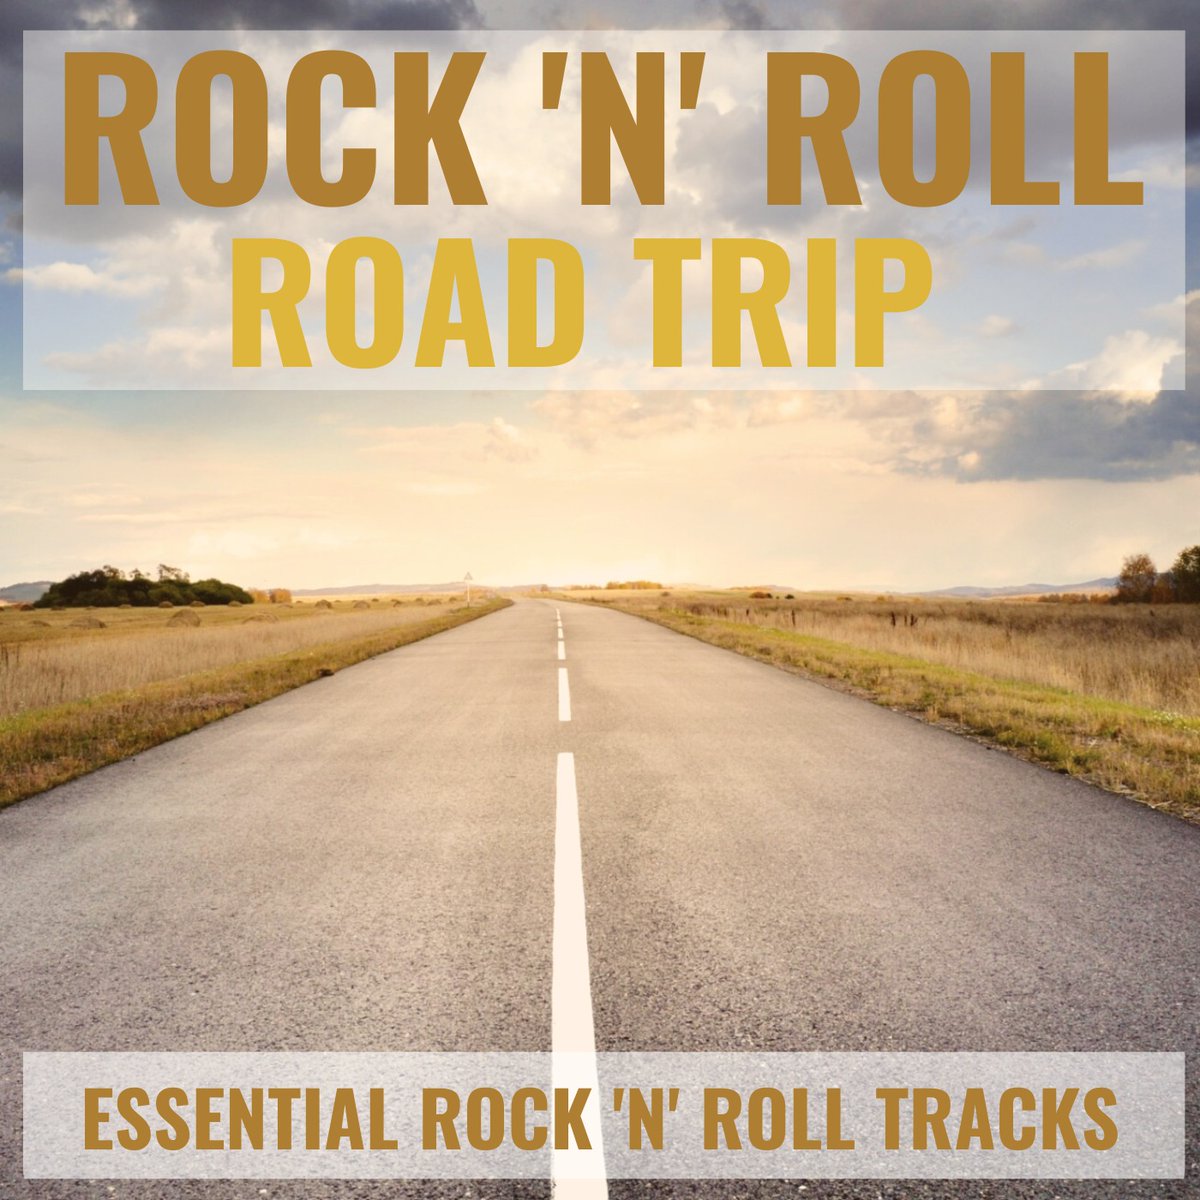 Rock 'n' Roll Road Trip (Your Essential Rock Tracks for a Road Trip)
Listen on Spotify
open.spotify.com/playlist/75yRU…
Genre: #indie #punk #rock #indierock #alternativerock #garagerock #surfrock #funkrock #countryrock #glamrock #progressiverock #hardrock #softrock #slowrock #rocknroll